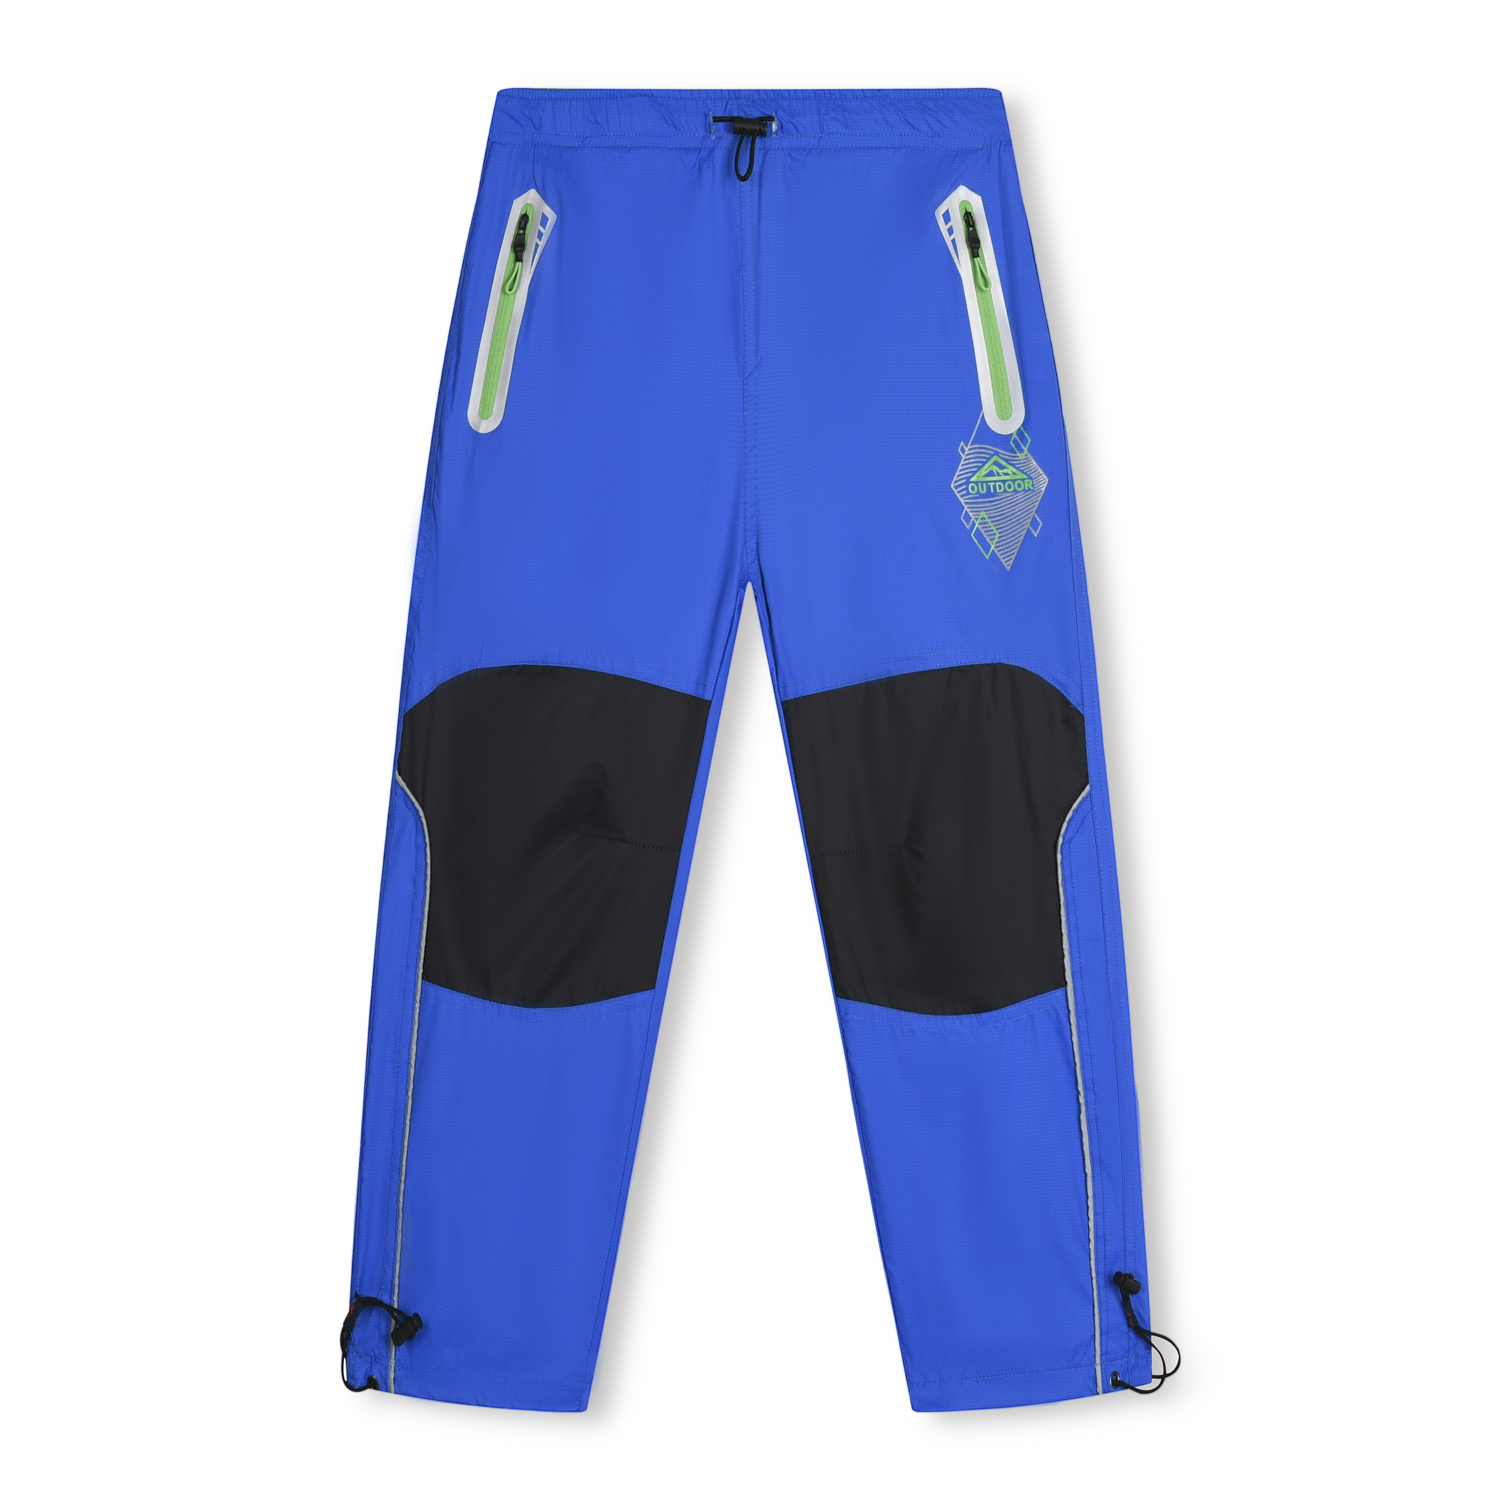 Chlapecké šusťákové kalhoty - KUGO SK7739, modrá Barva: Modrá, Velikost: 146